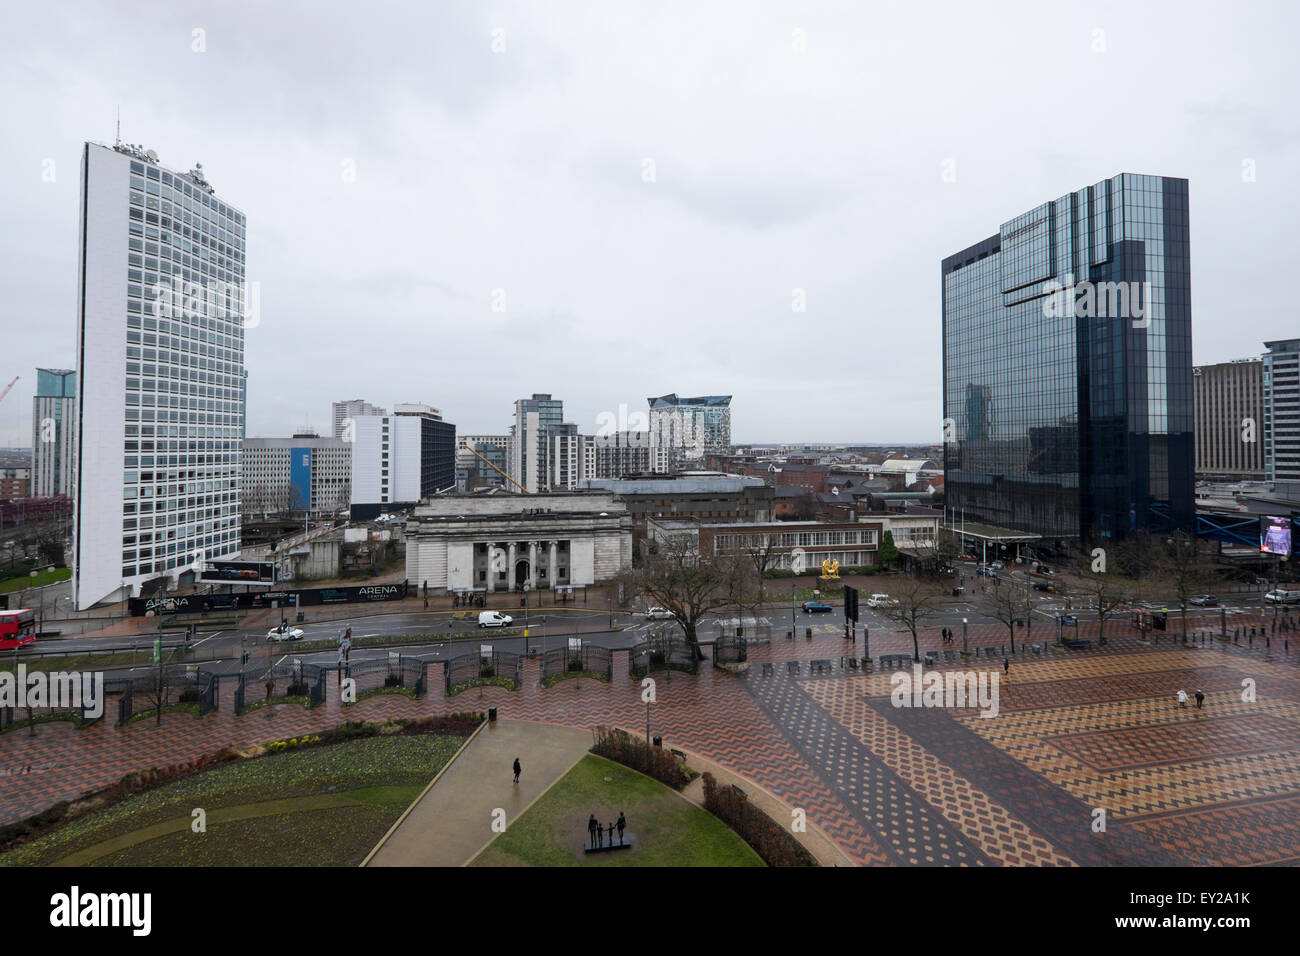 Vue panoramique du centre-ville de Birmingham Banque D'Images